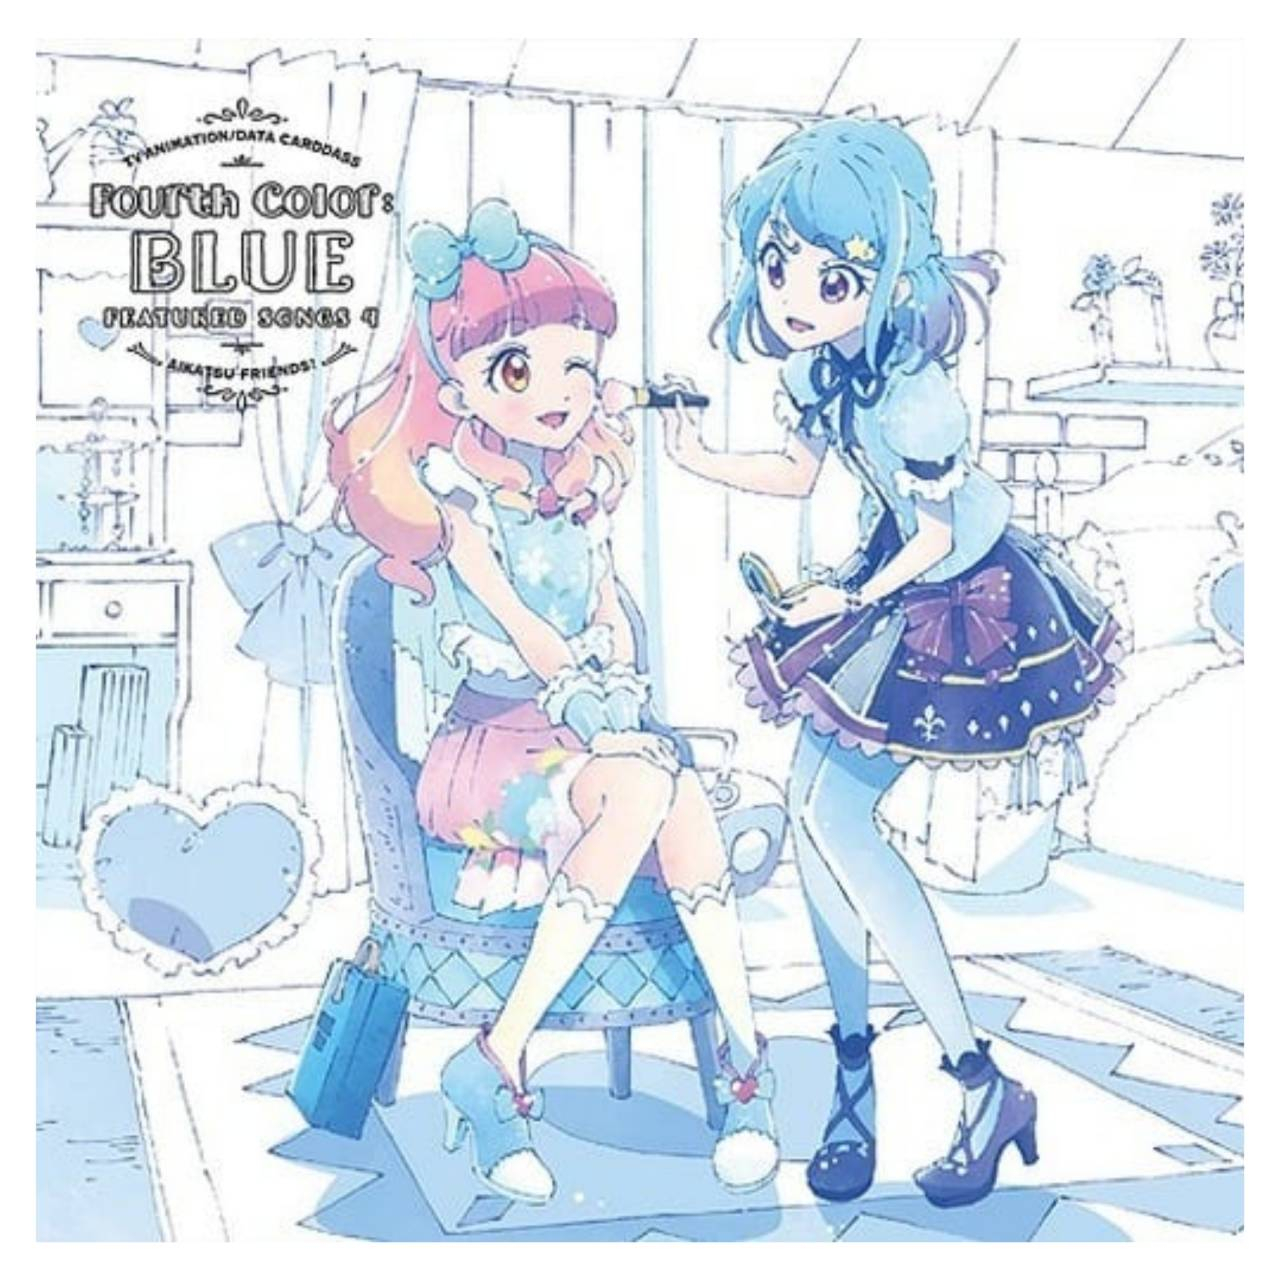 【代購】偶像學園 偶像活動 CD 專輯 Fourth Color：BLUE 愛音•美緒 aikatsu!